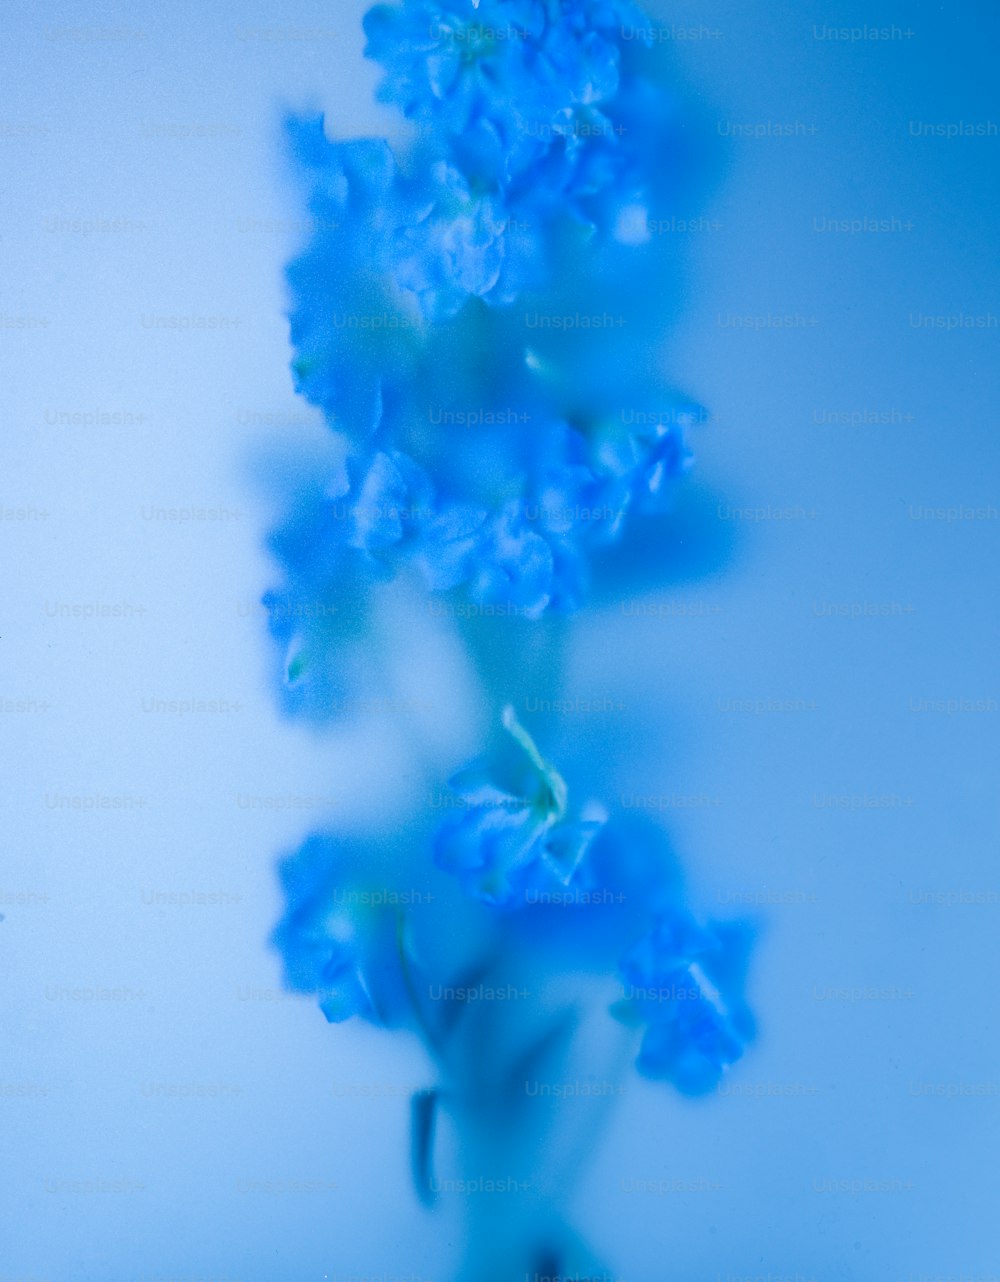 파란 꽃이 탁자 위의 꽃병에 있다